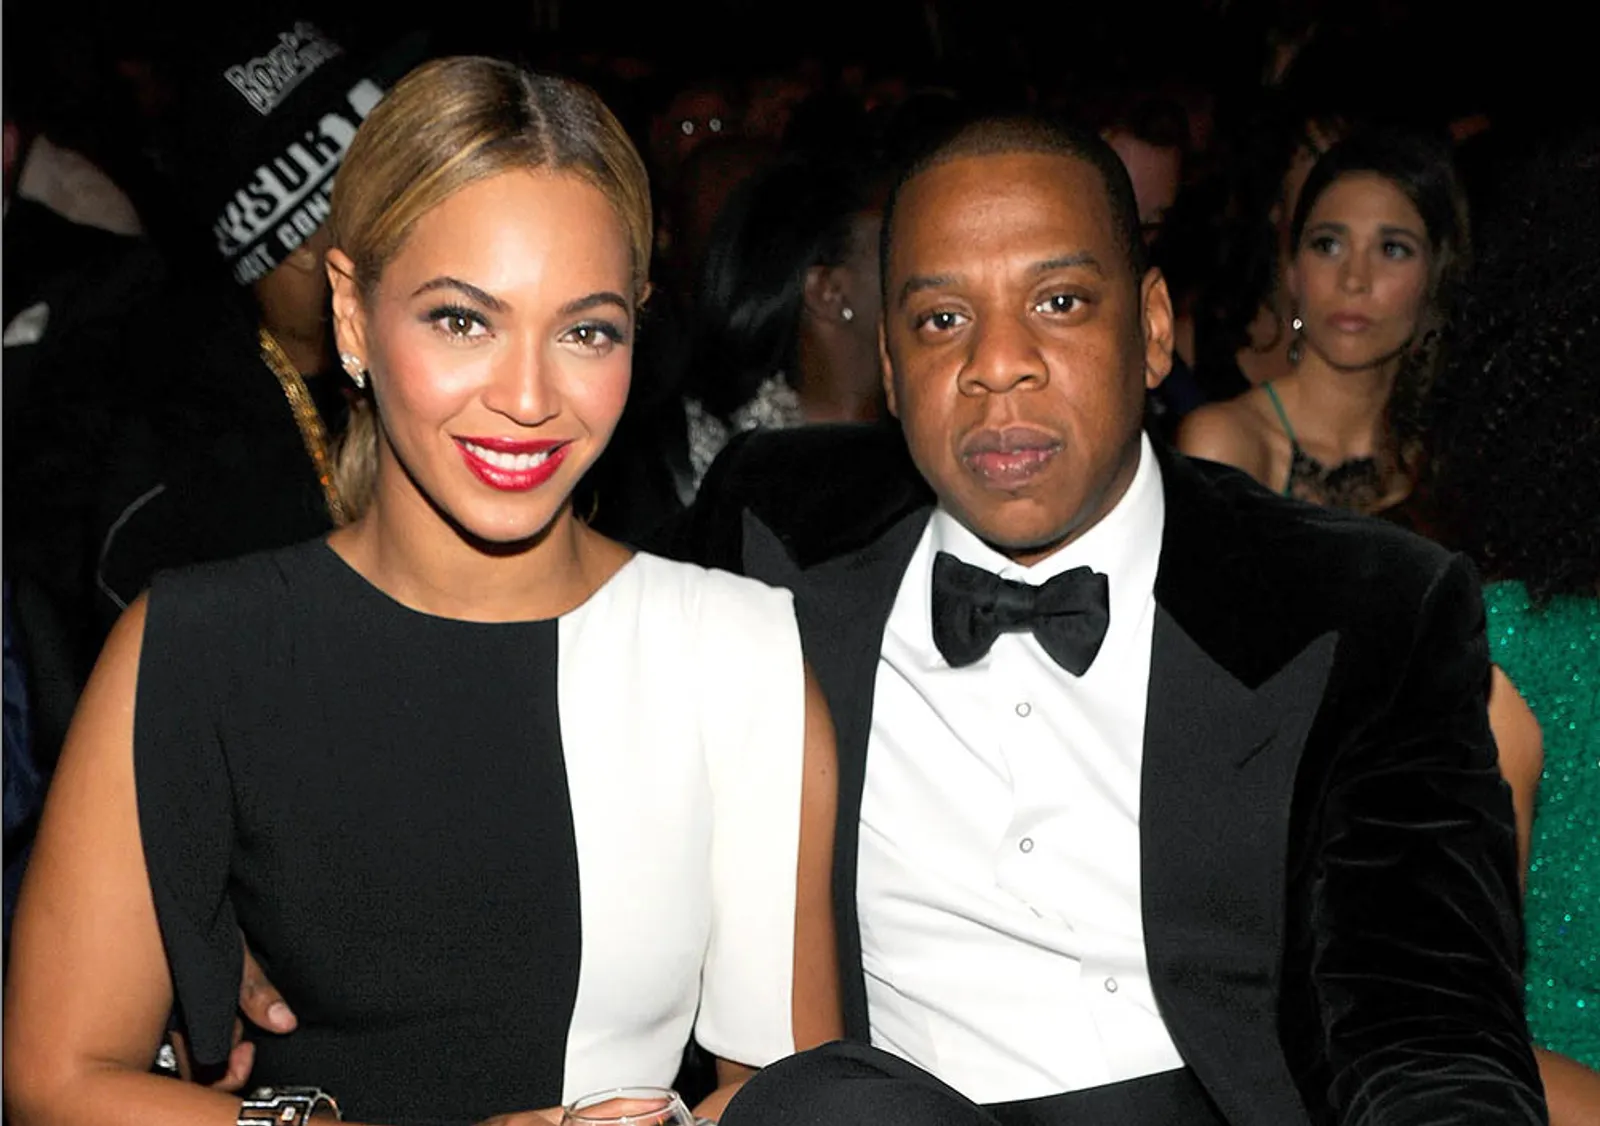 Jay Z Curhat tentang Masalah Rumah Tangganya dengan Beyonce